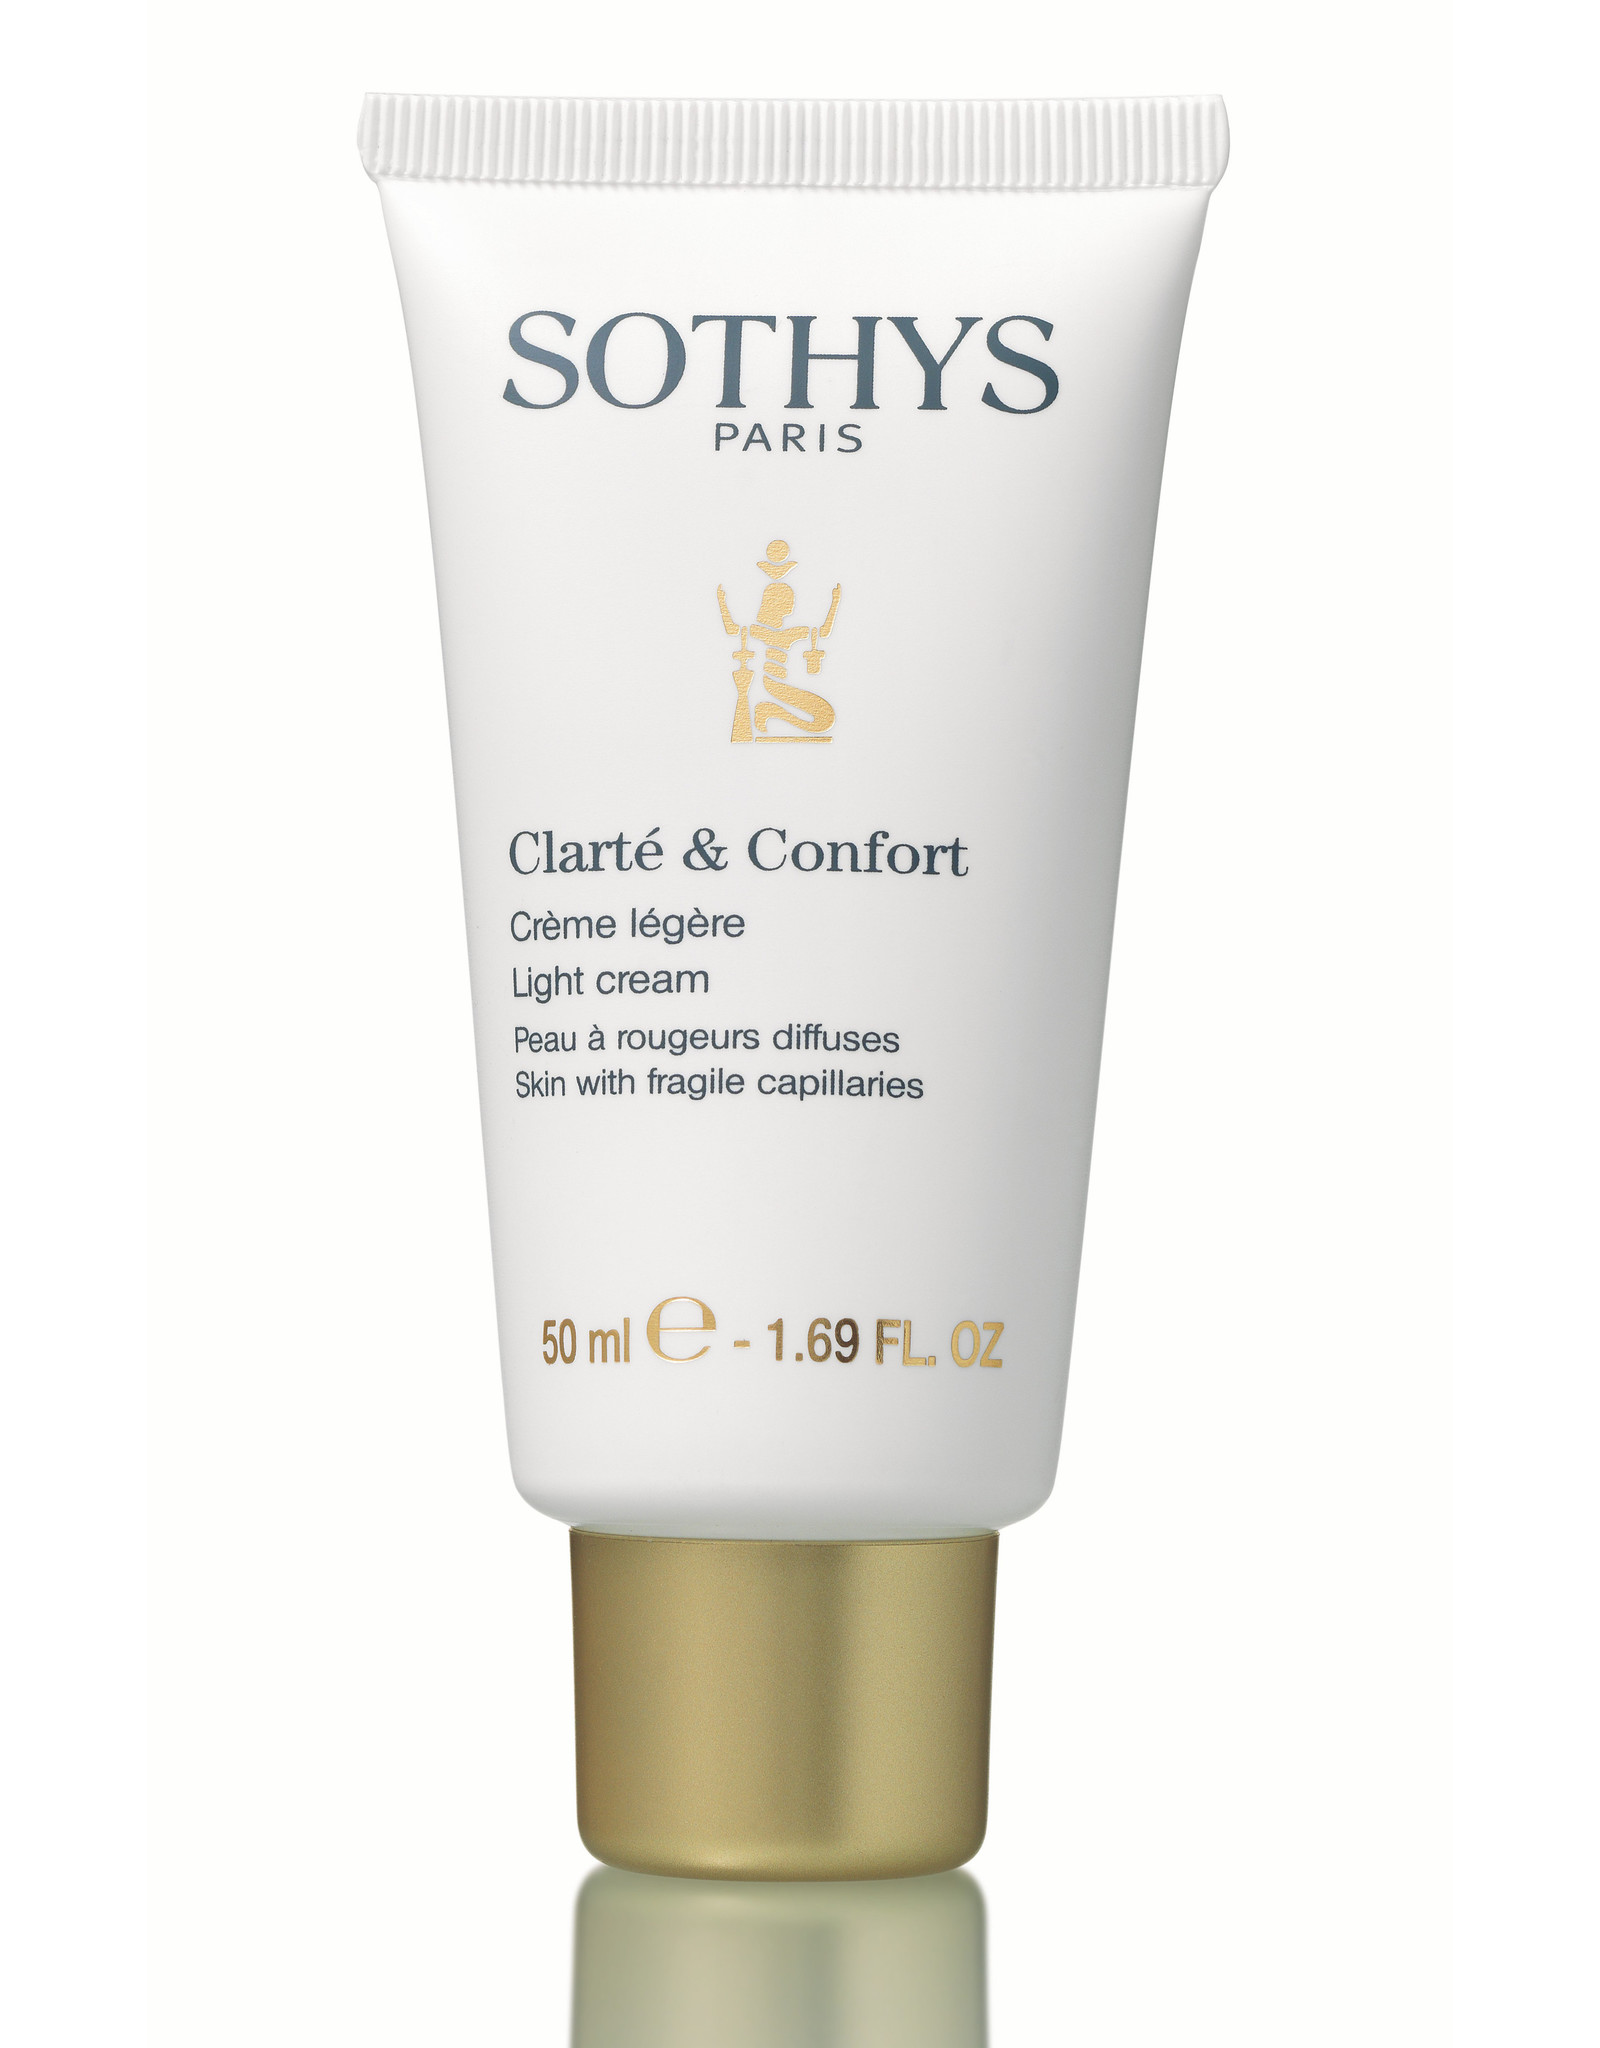 SOTHYS Clarté & Confort Crème légère - Sothys